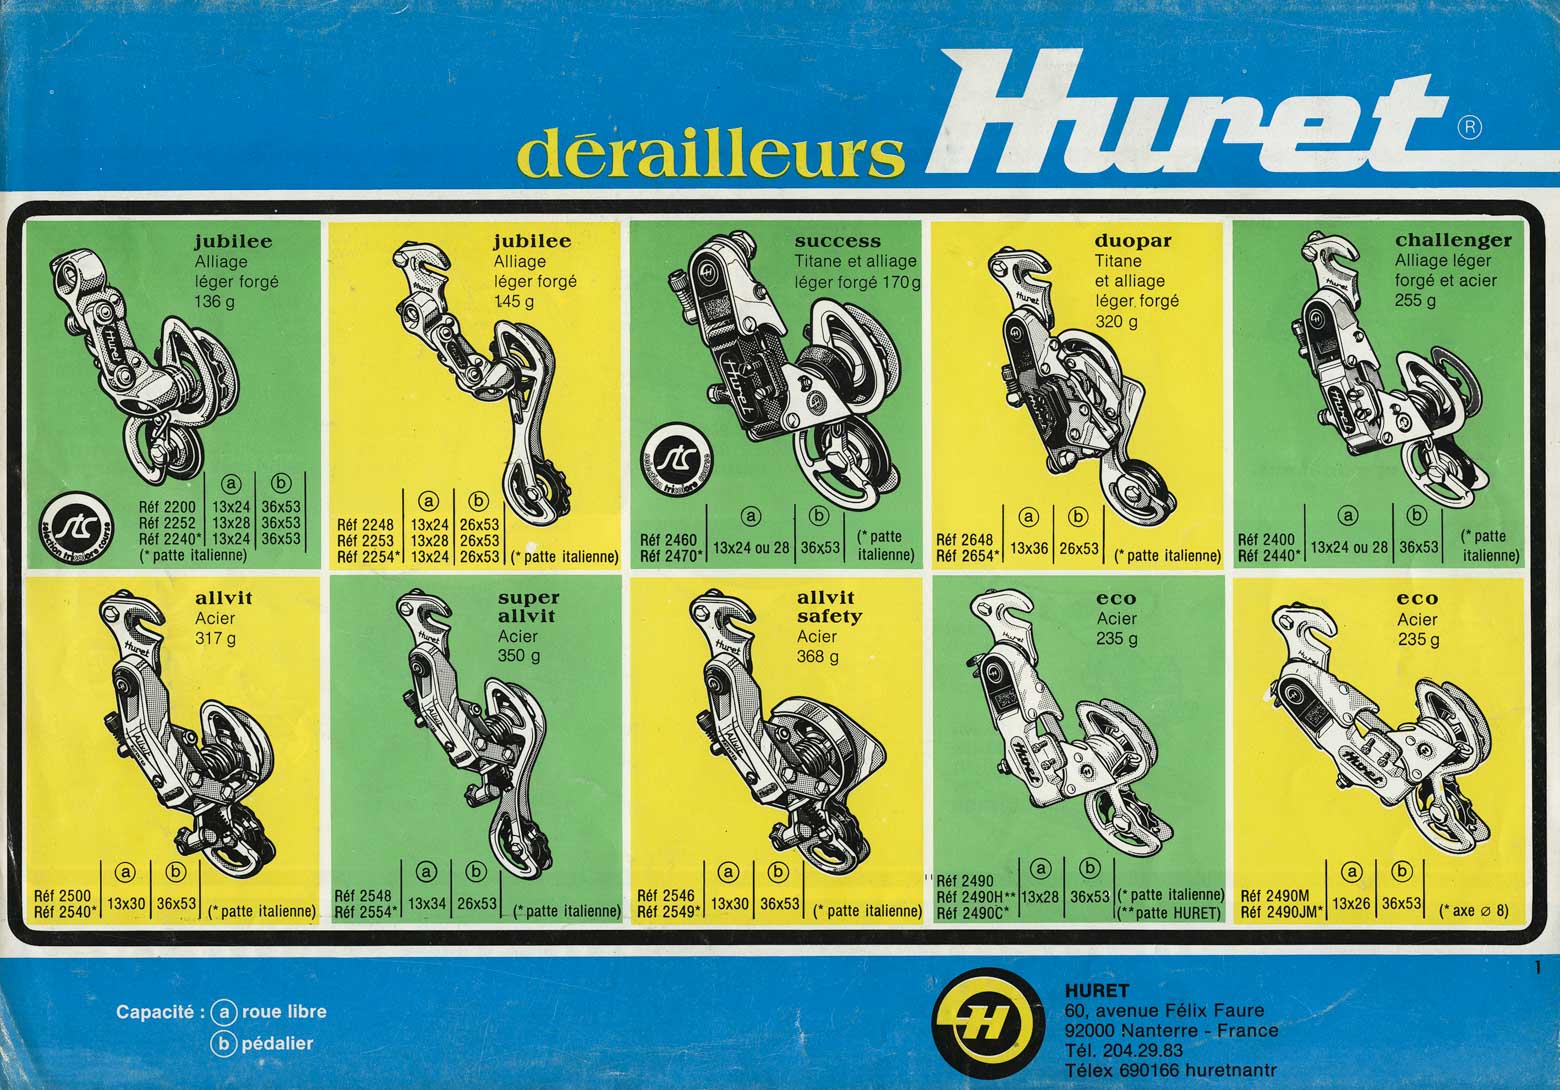 Huret leaflet - 1977? scan 1 main image